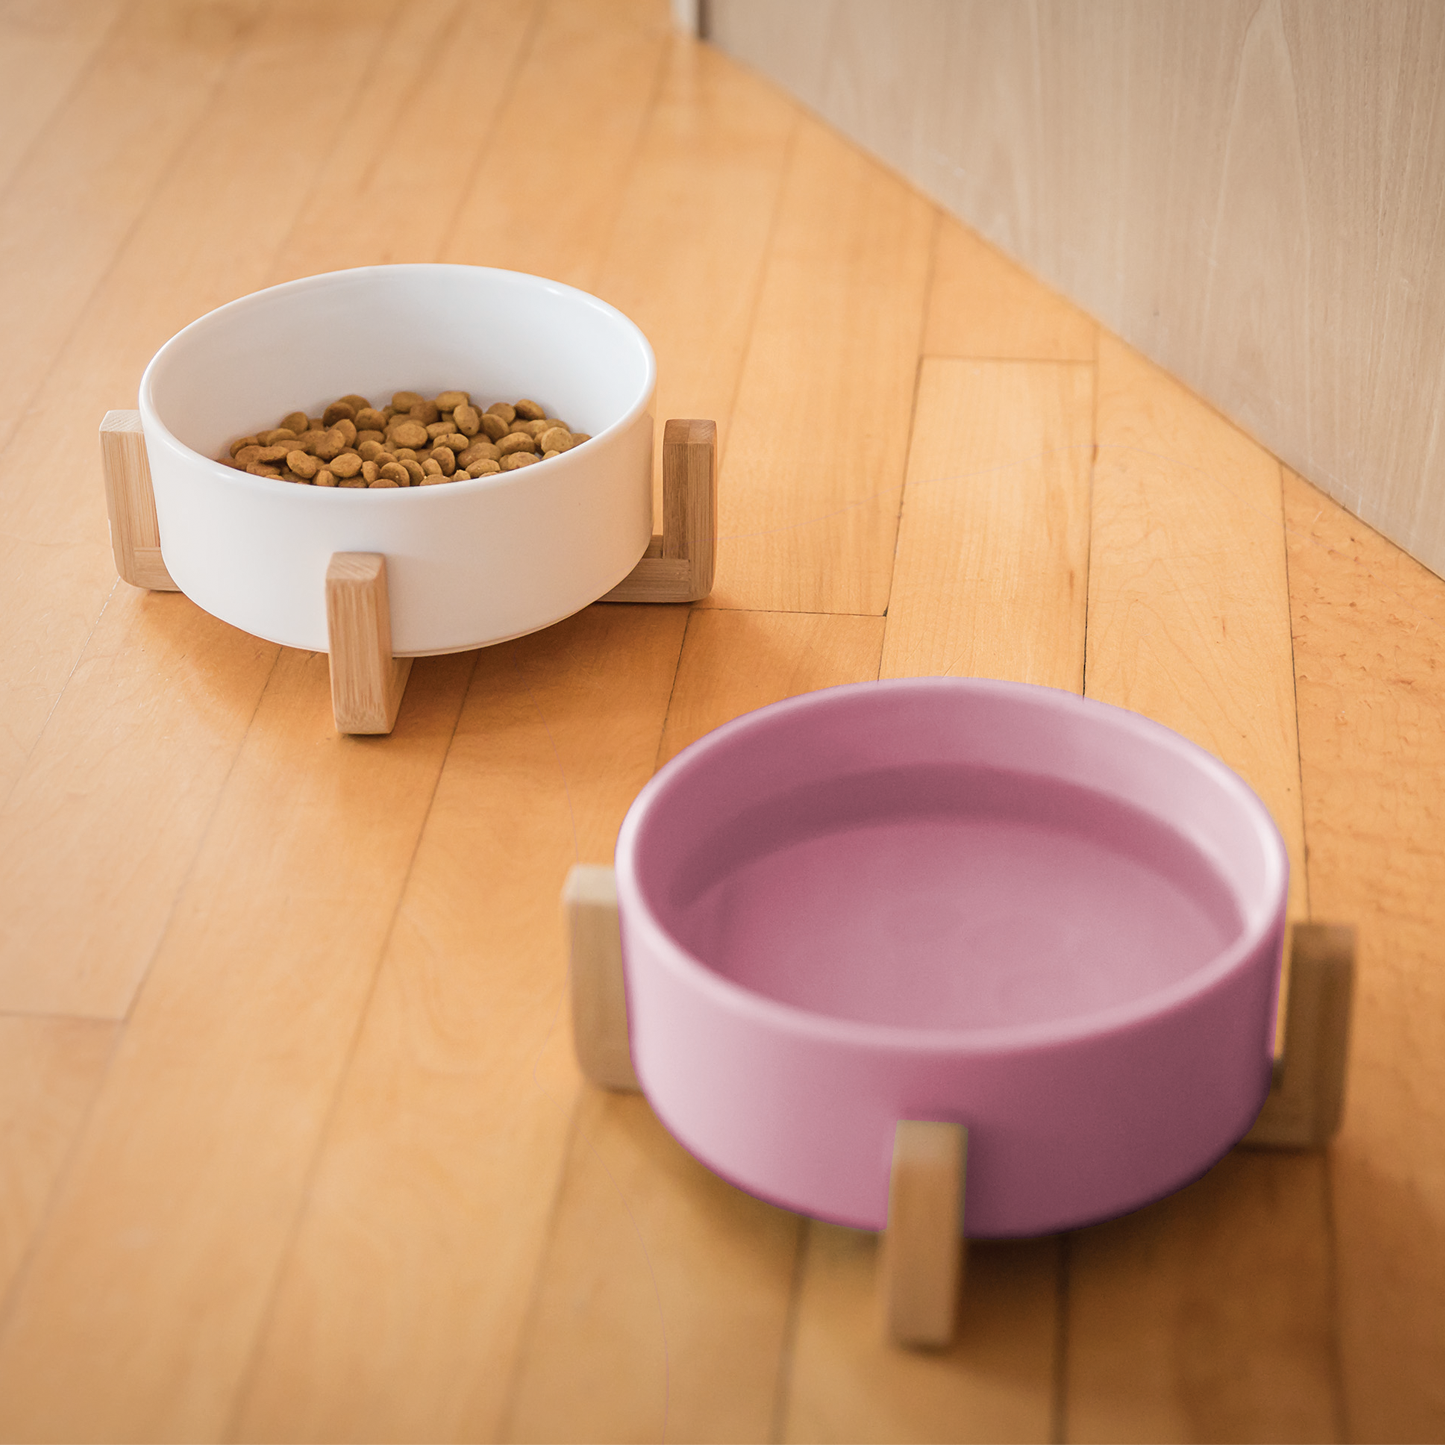 Ceramic bowl on wood pilotis for pet, pink